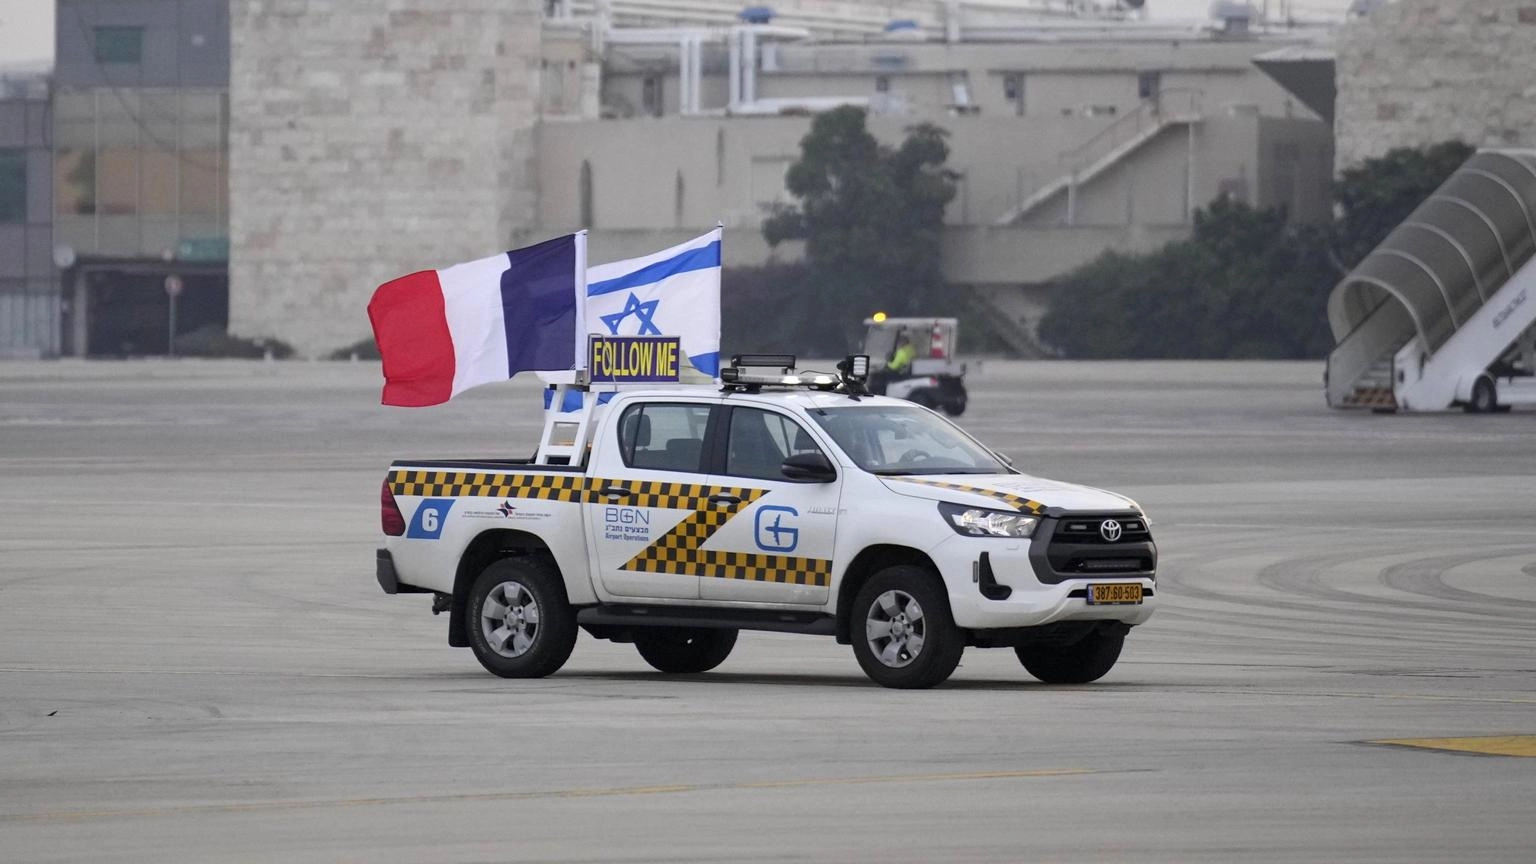 Gaza, colpito Istituto francese, Parigi chiede spiegazioni